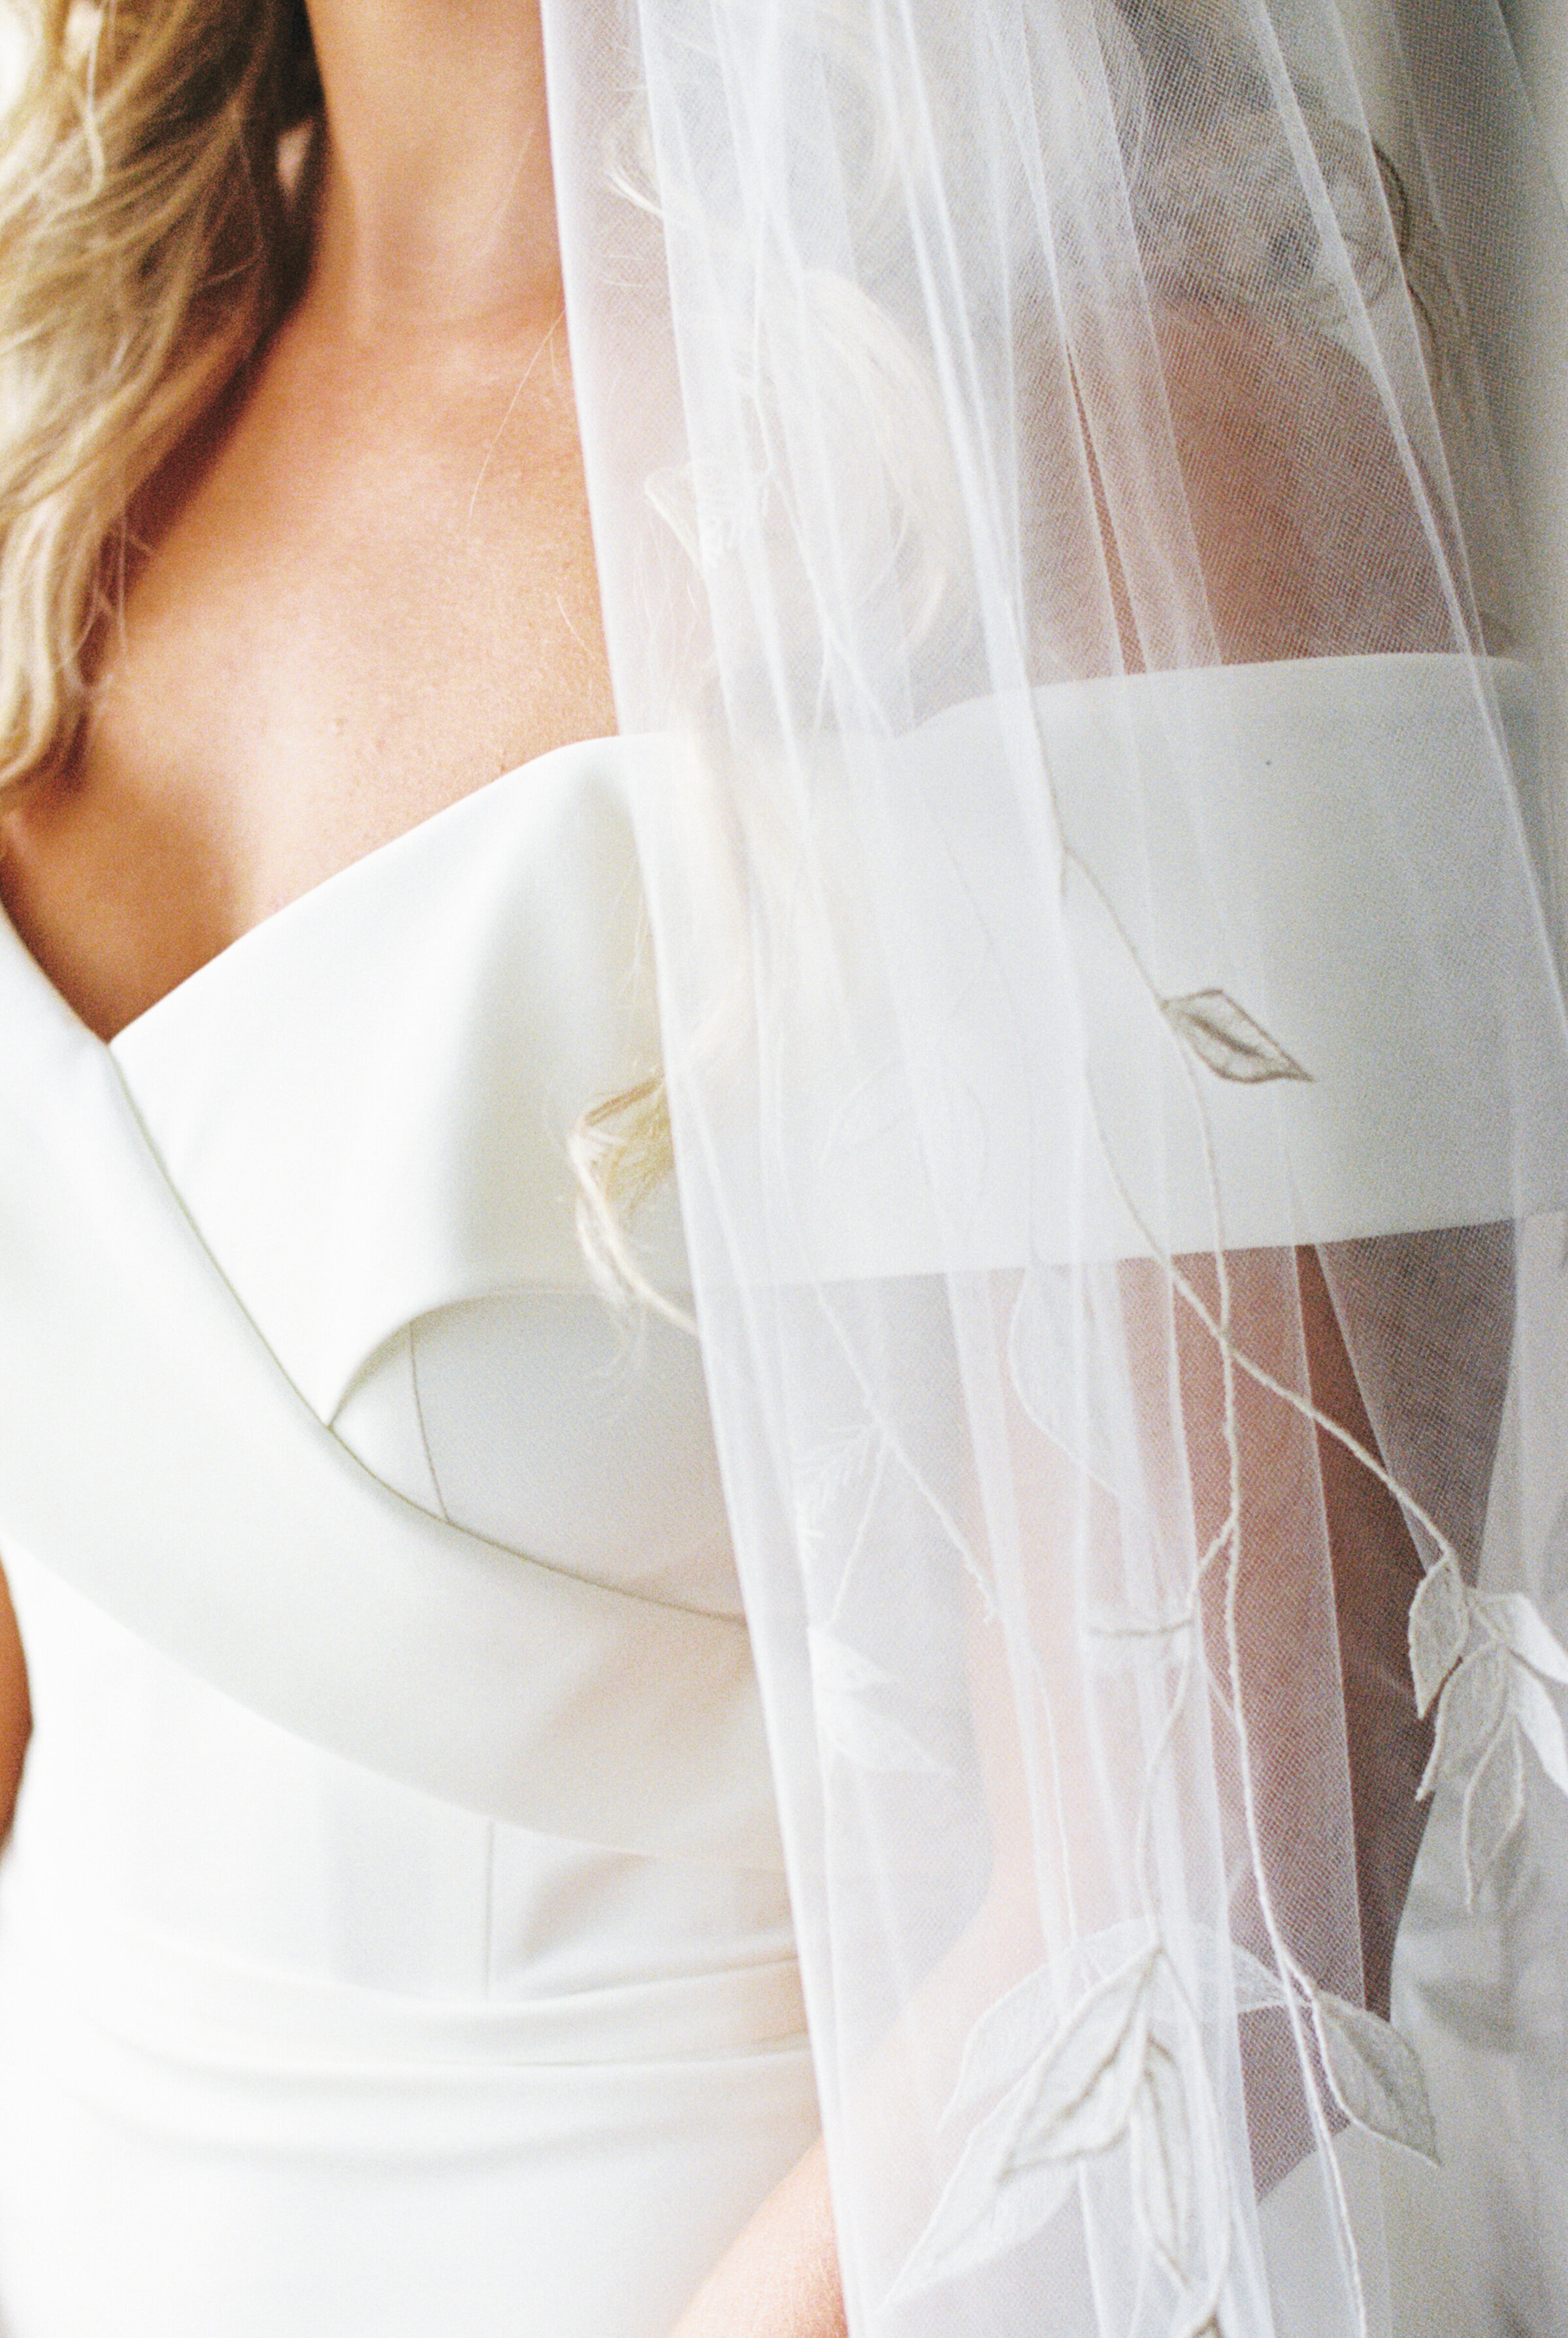 bridal veil applique details for Samoset Resort wedding  in  Rockport, ME